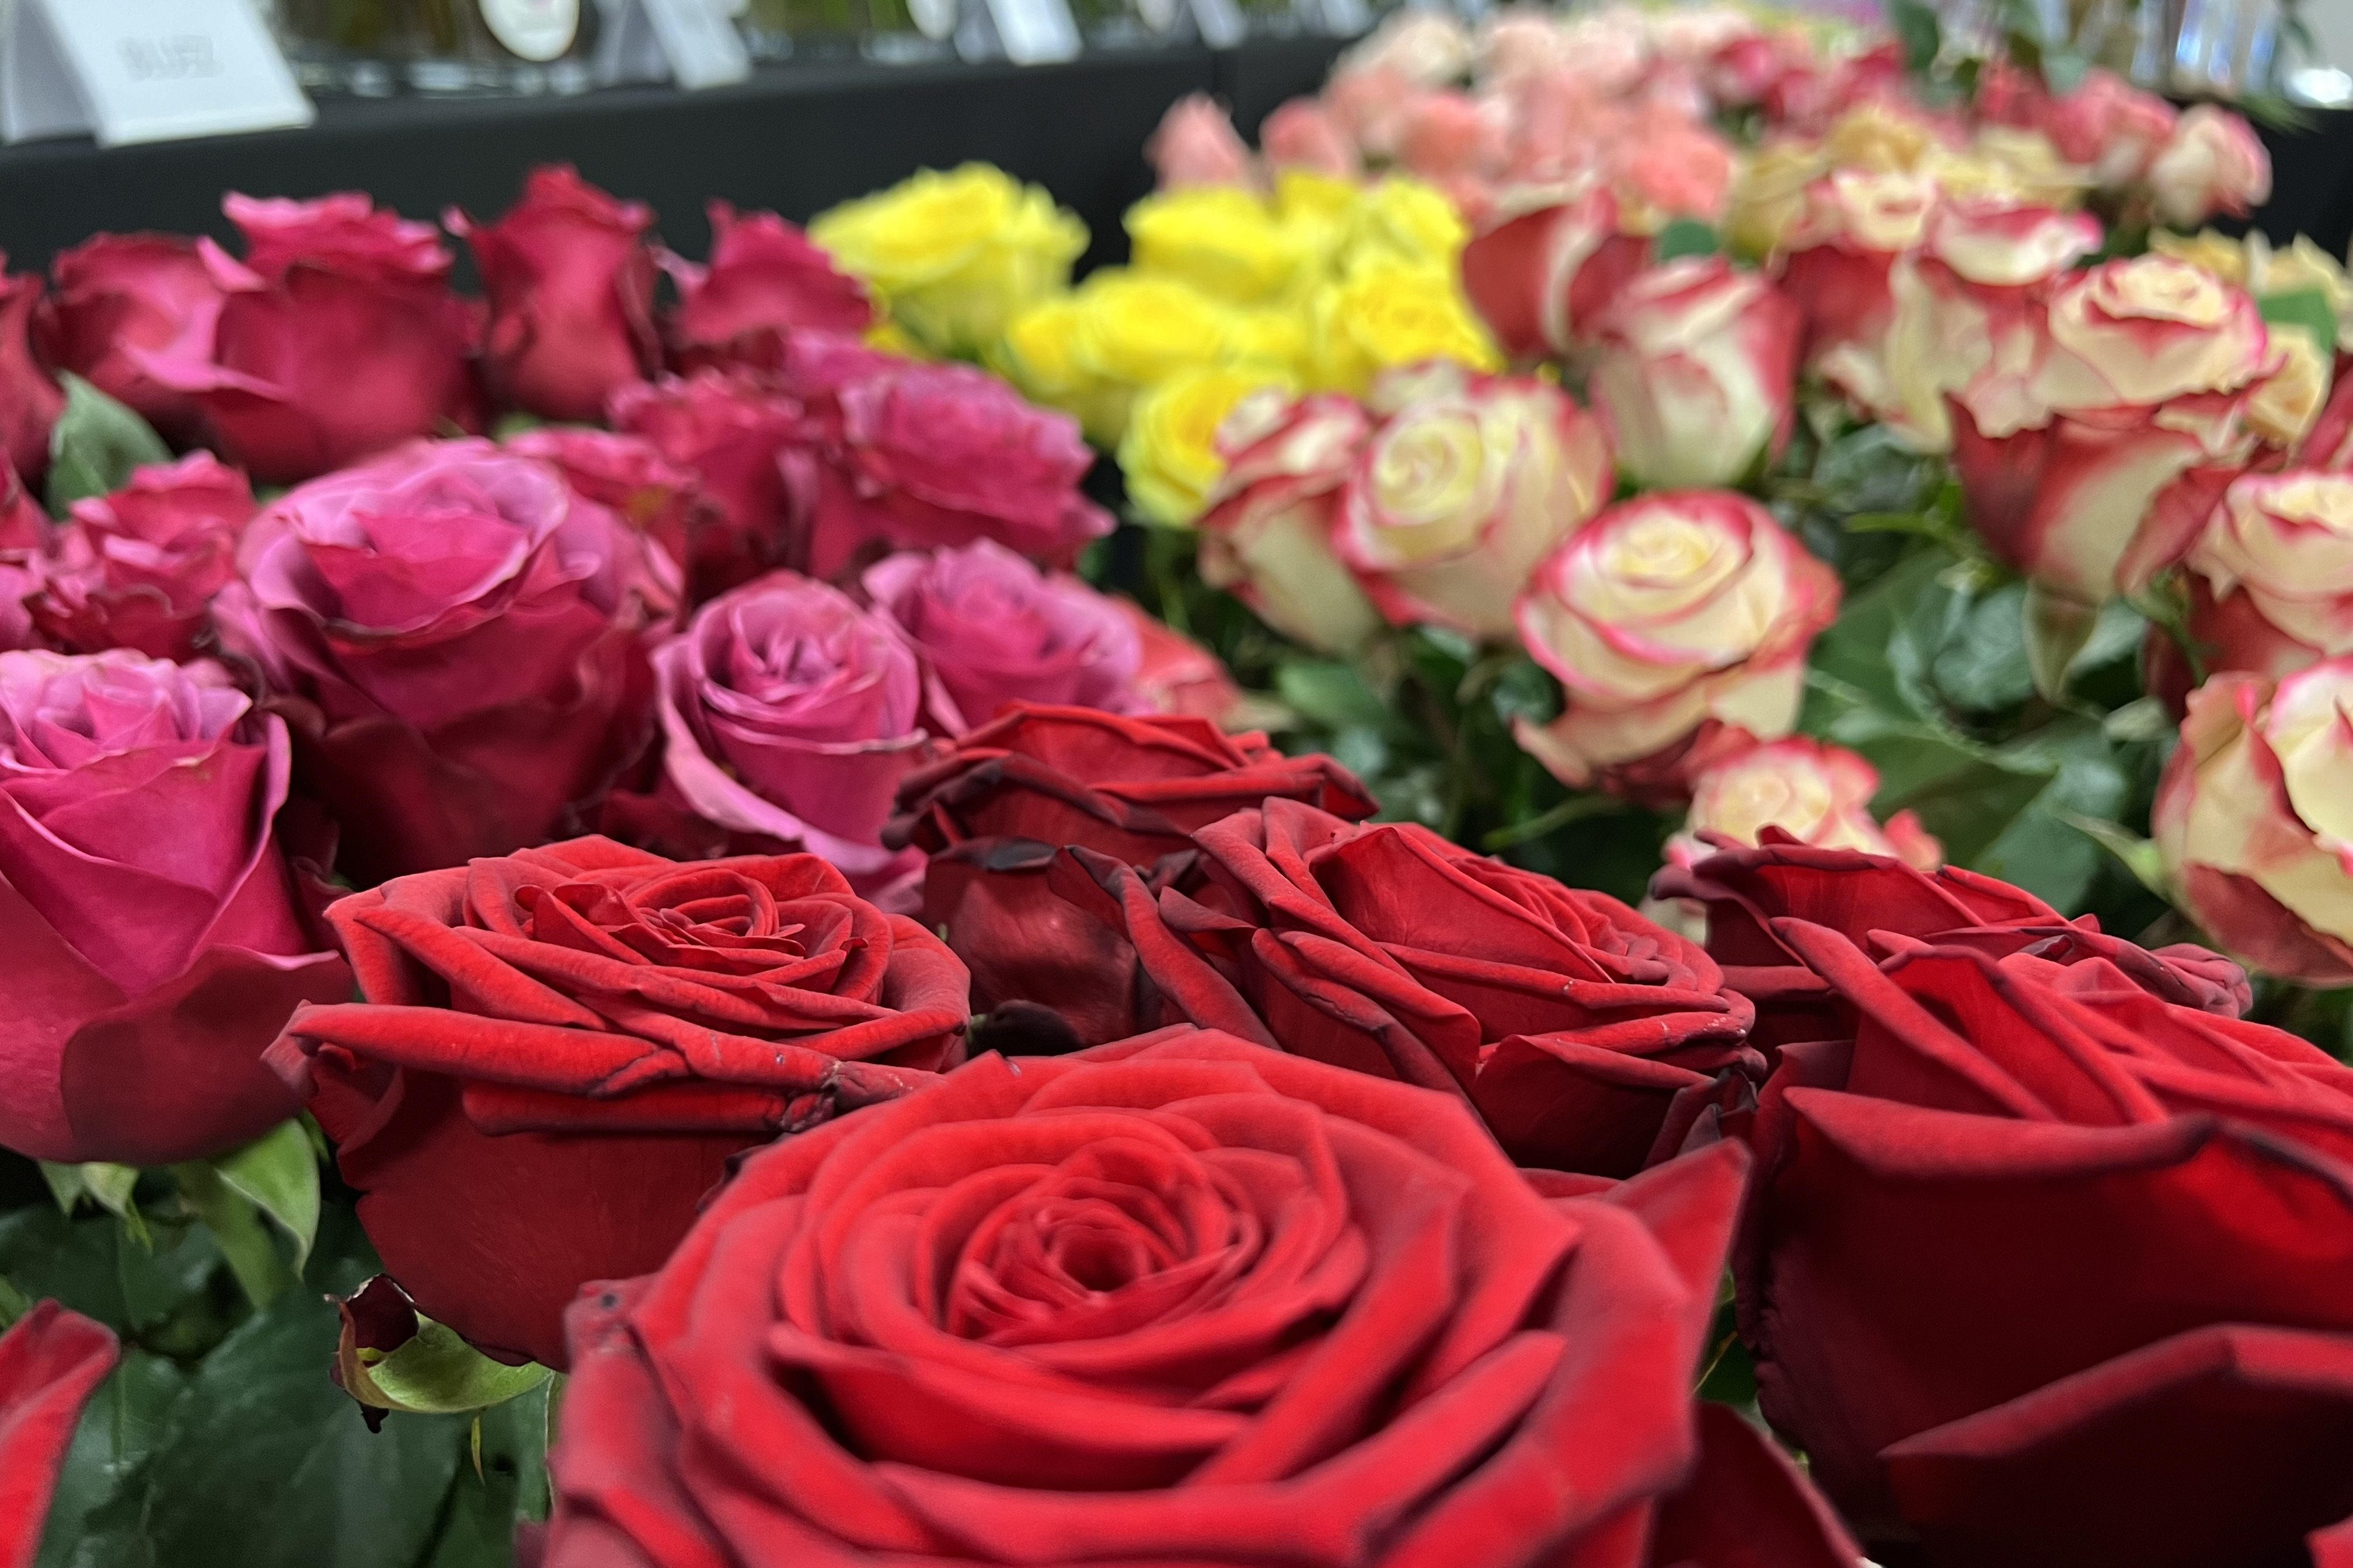 Los floristas prevén vender seis millones de rosas este Sant Jordi y mantener los precios